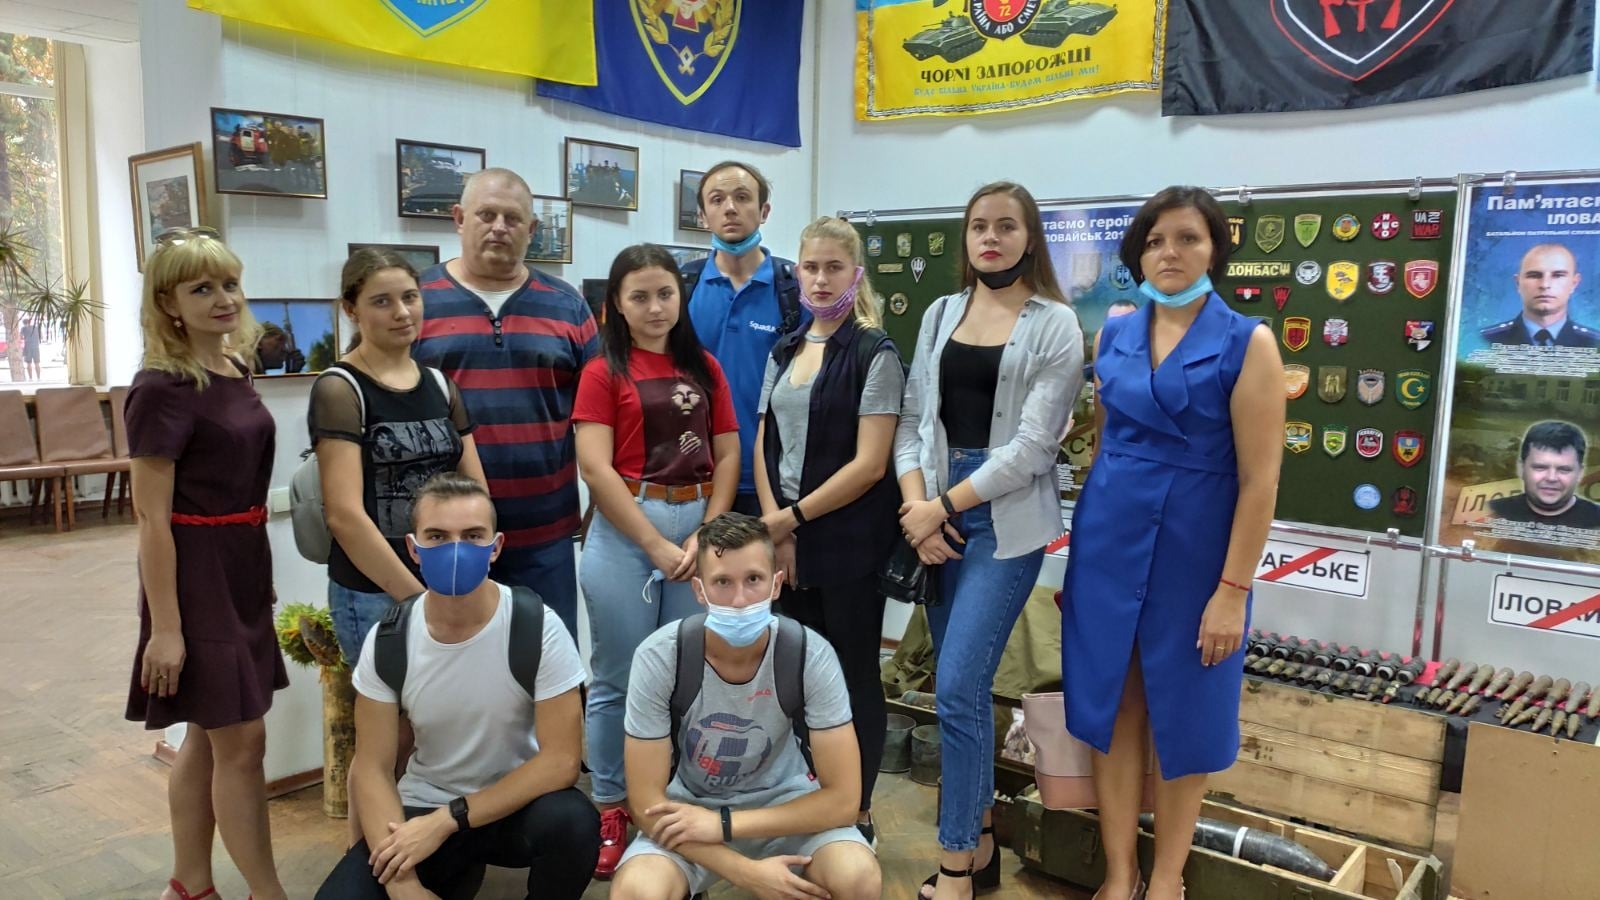 Херсонским студентам показали выставку стрелкового оружия “Иловайск. День памяти”